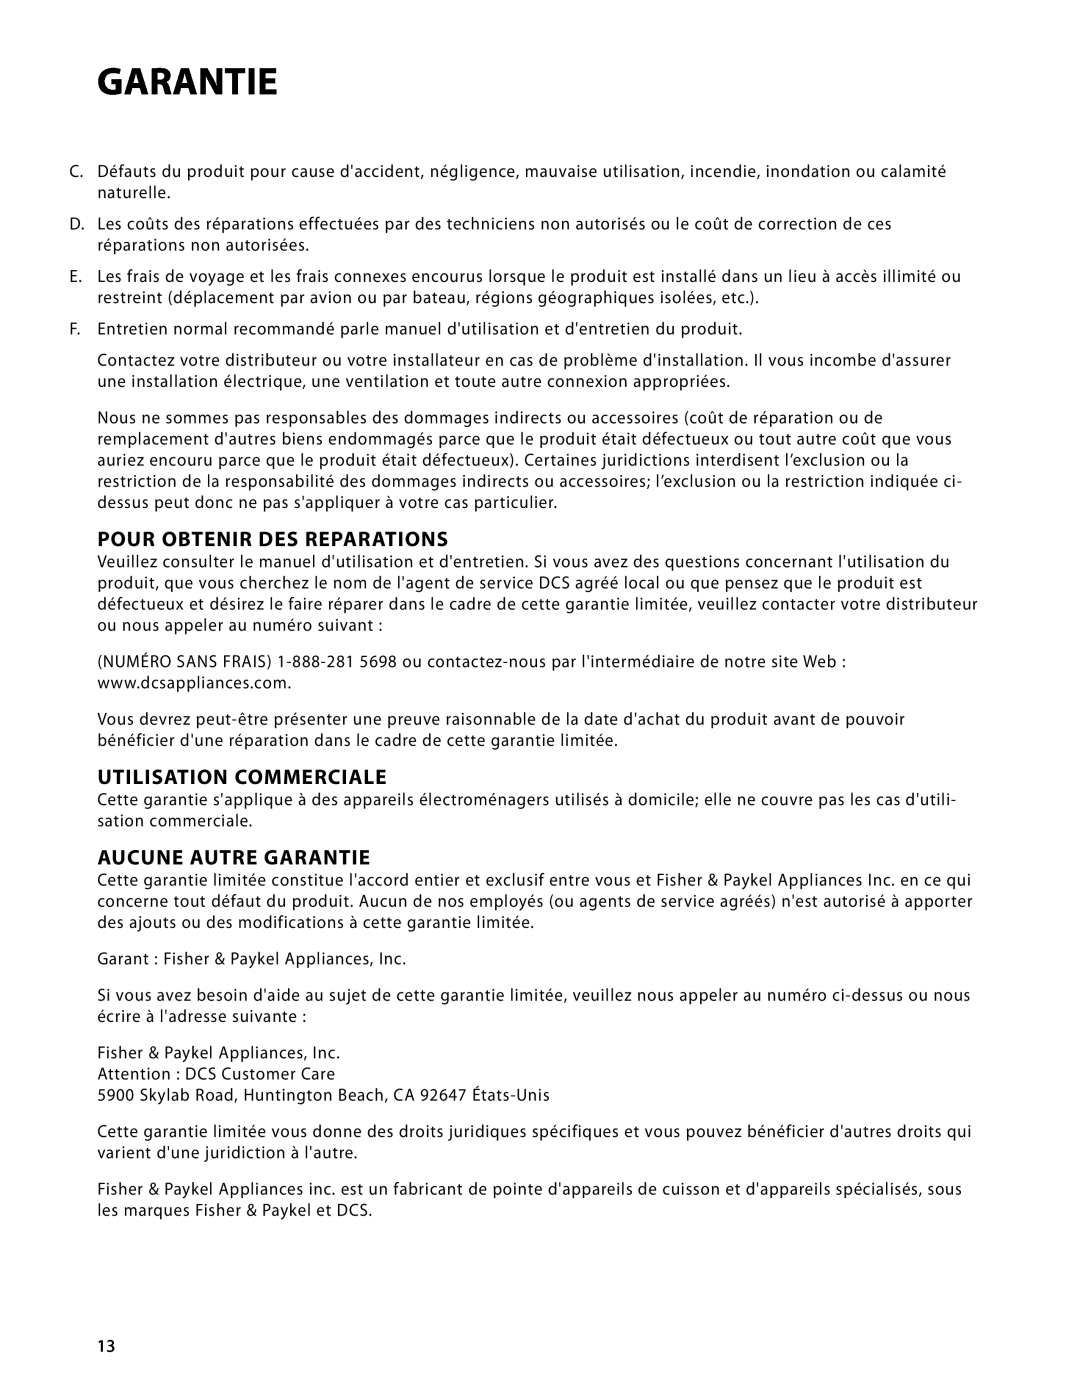 DCS WDT-30, WDTI manual Pour Obtenir Des Reparations, Utilisation Commerciale, Aucune Autre Garantie 